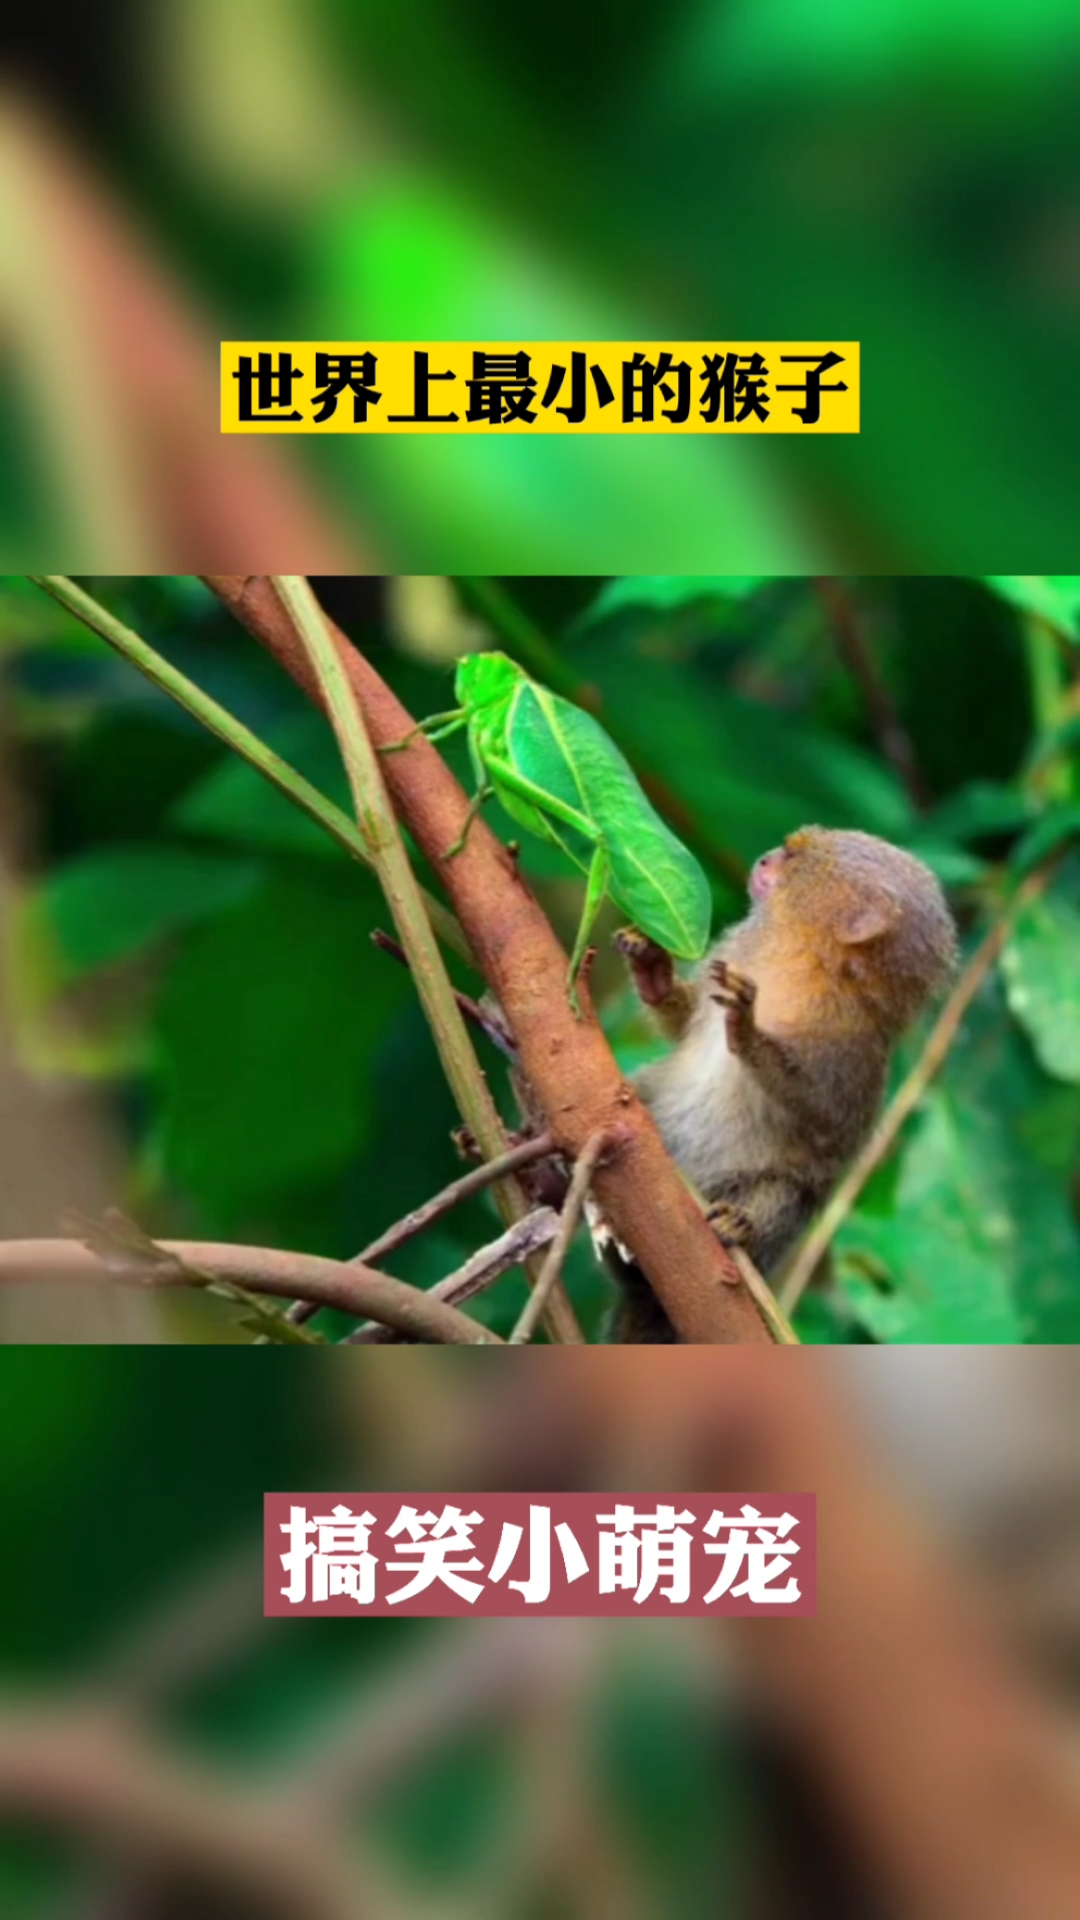 神奇动物世界上最小的猴子萌萌的样子太可爱了